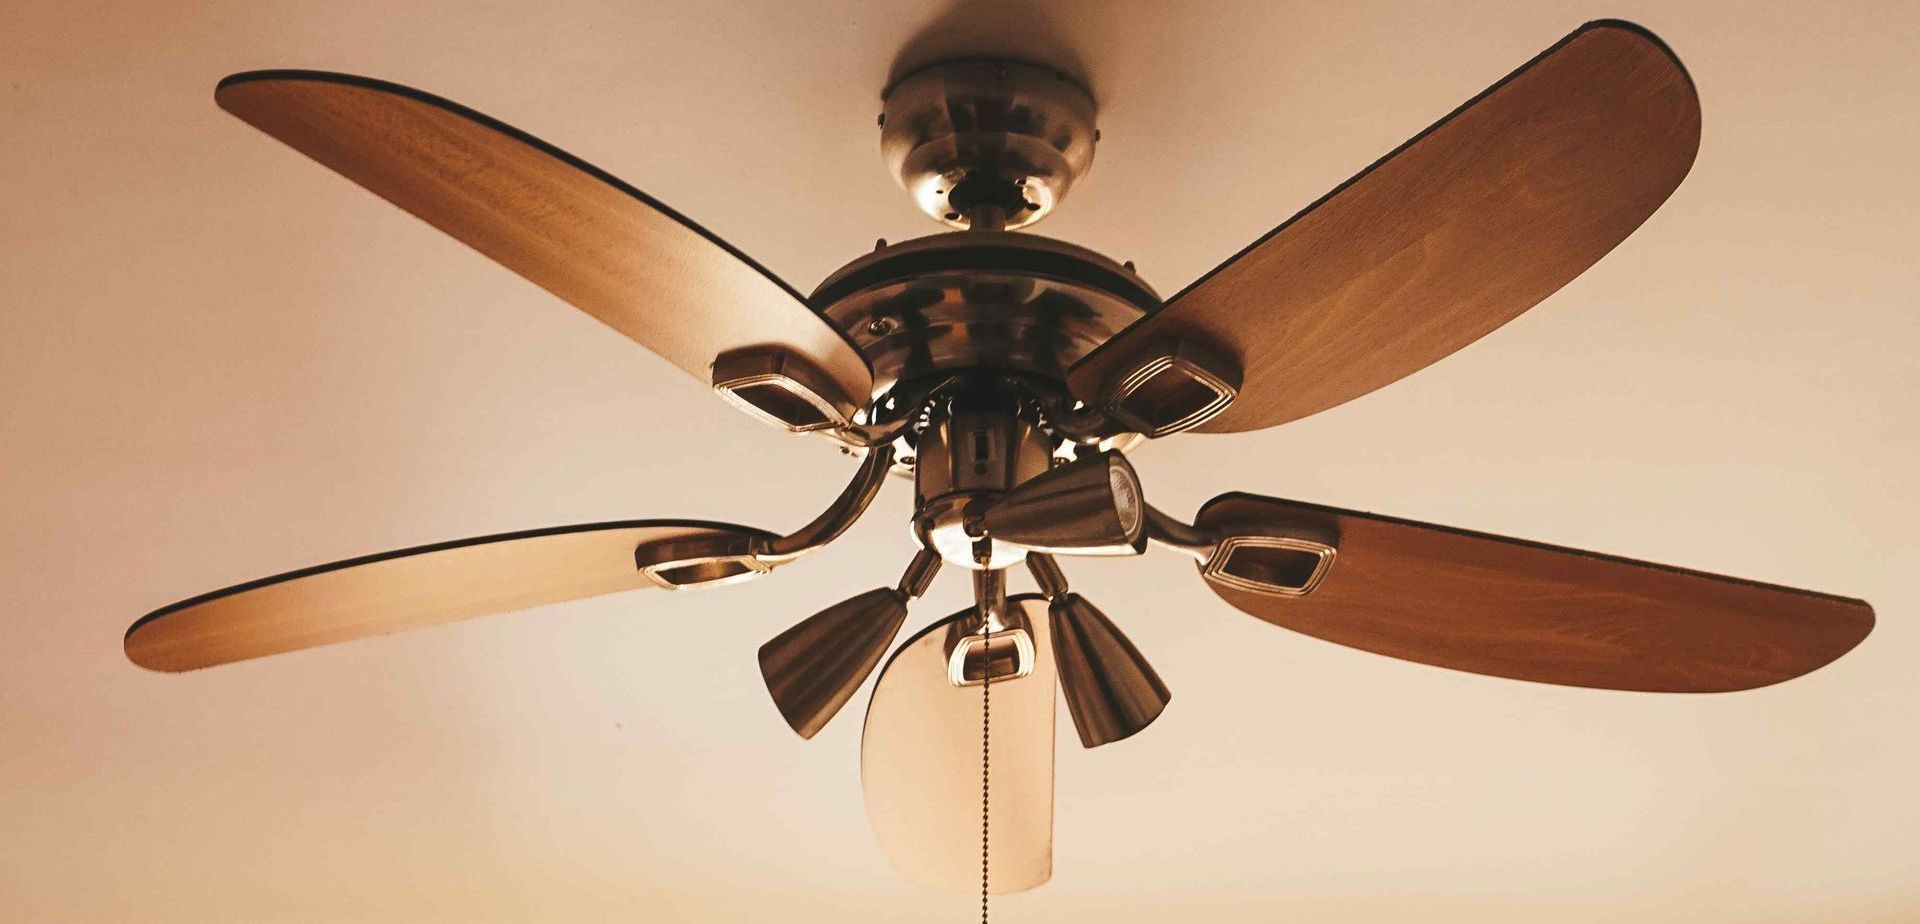 Wooden Ceiling Fan Installed Inside Home